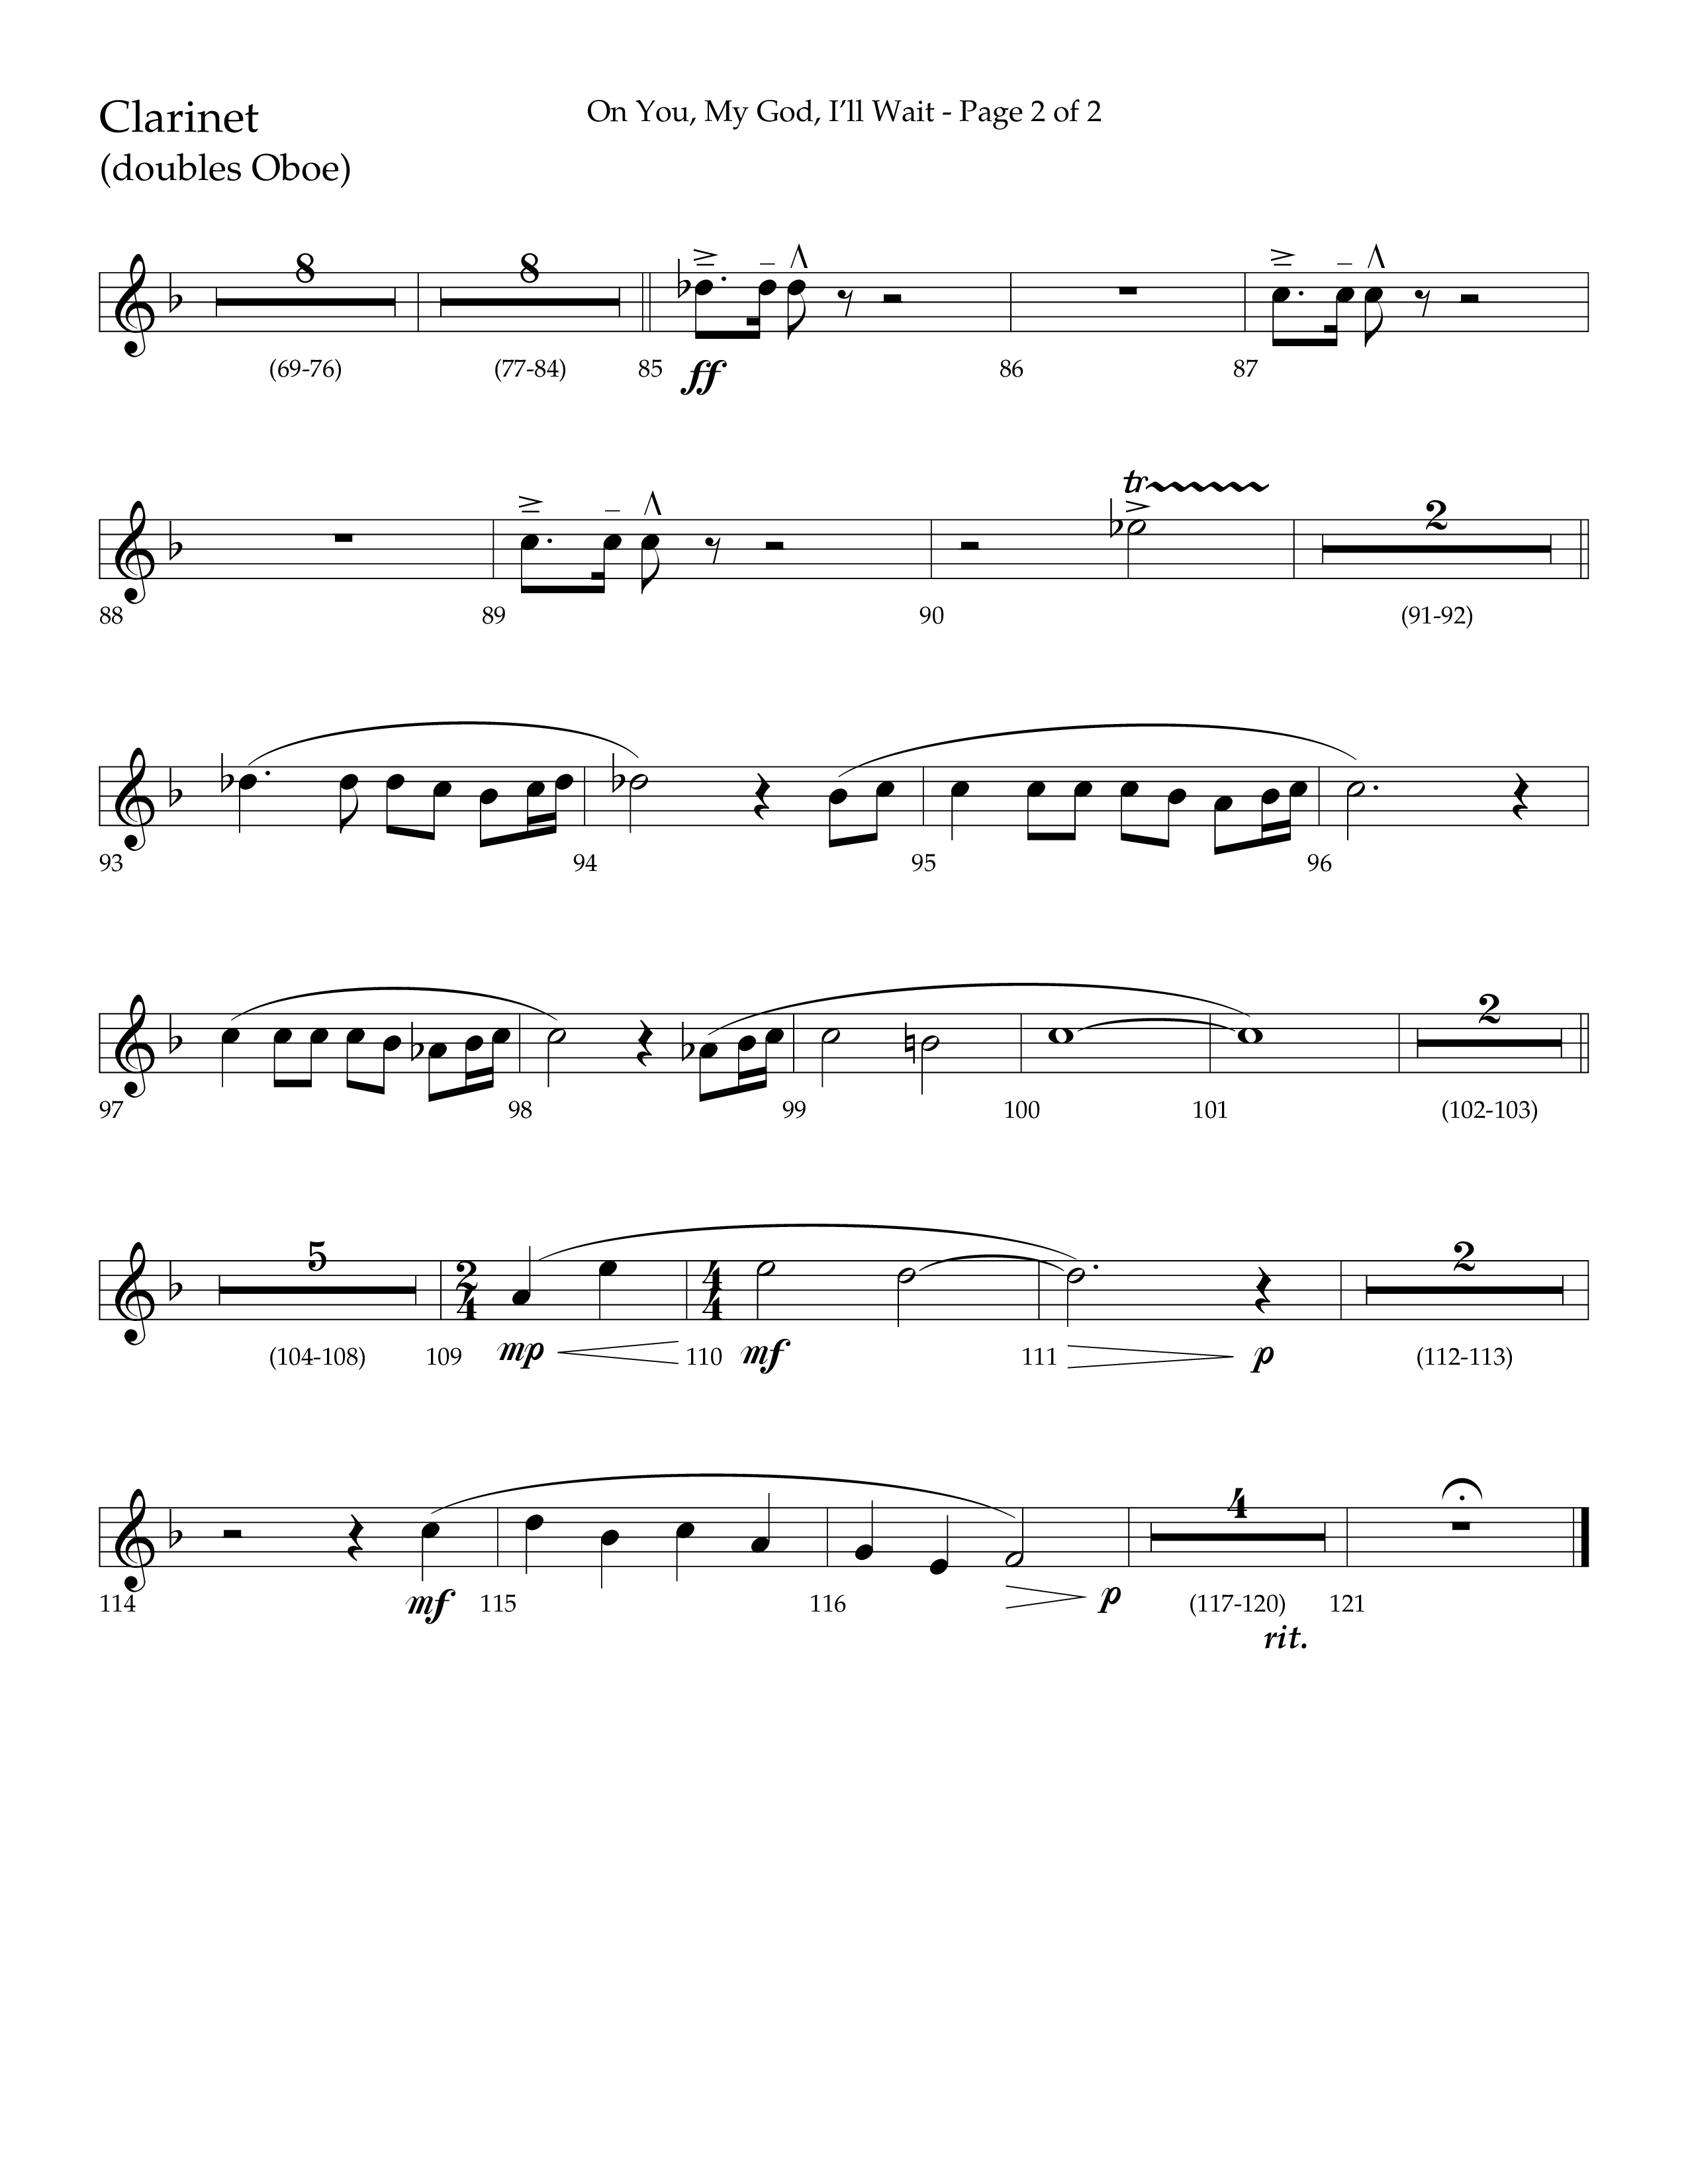 On You My God I'll Wait (Choral Anthem SATB) Clarinet (Lifeway Choral / Arr. Craig Adams / Arr. Mike Harland)